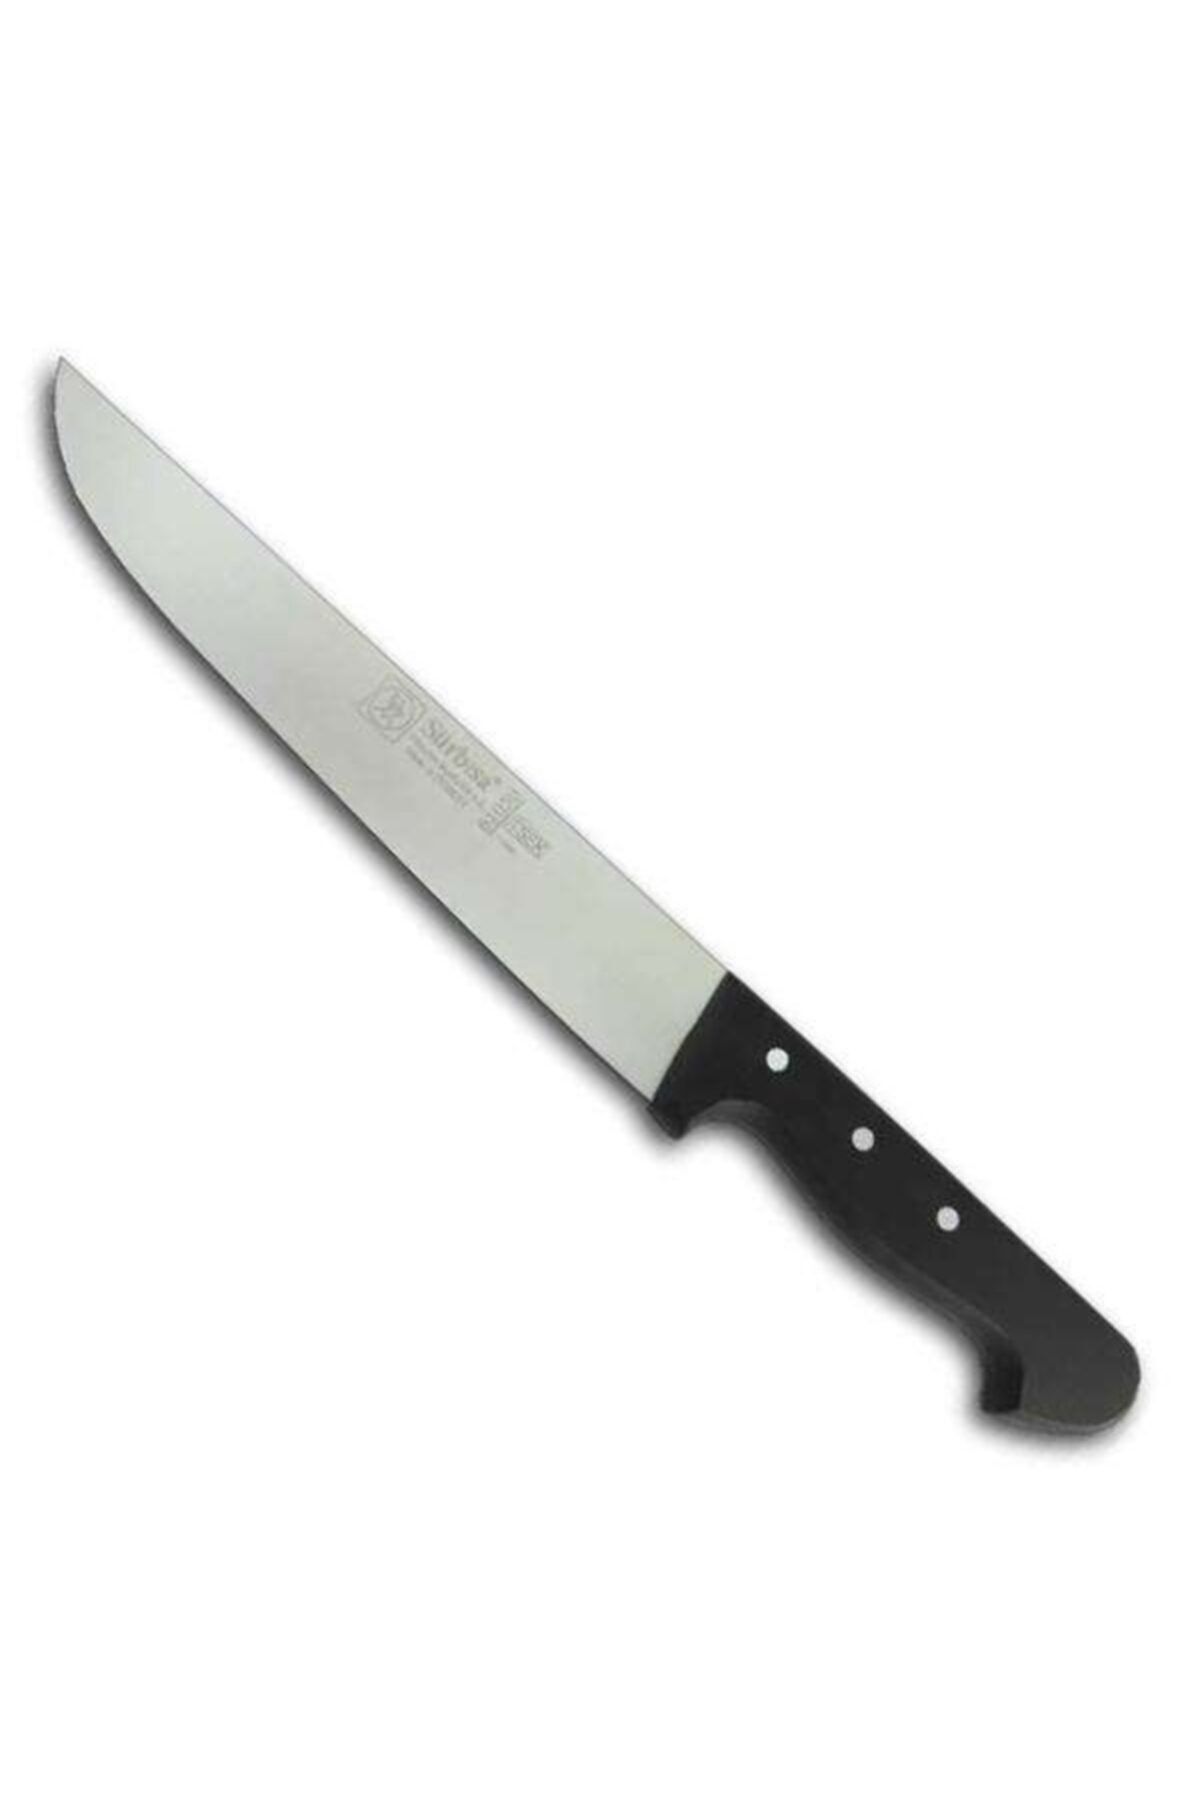 Genel Markalar Sürmene Mutfak Bıçağı No:61050 (kasap Kesim)